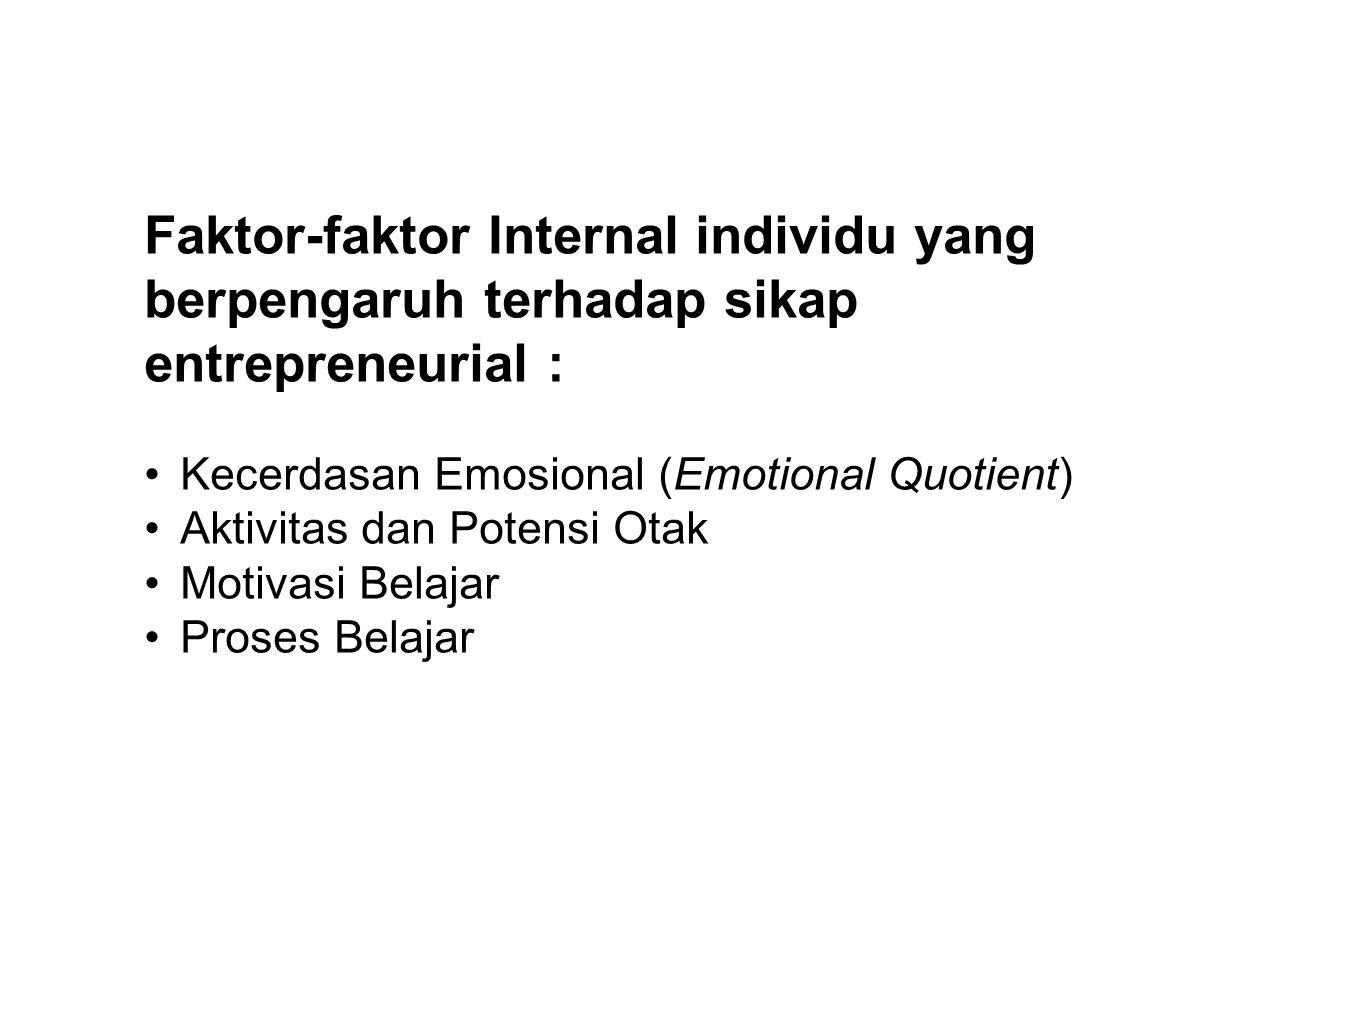 Faktor-faktor Internal individu yang berpengaruh terhadap sikap entrepreneurial :